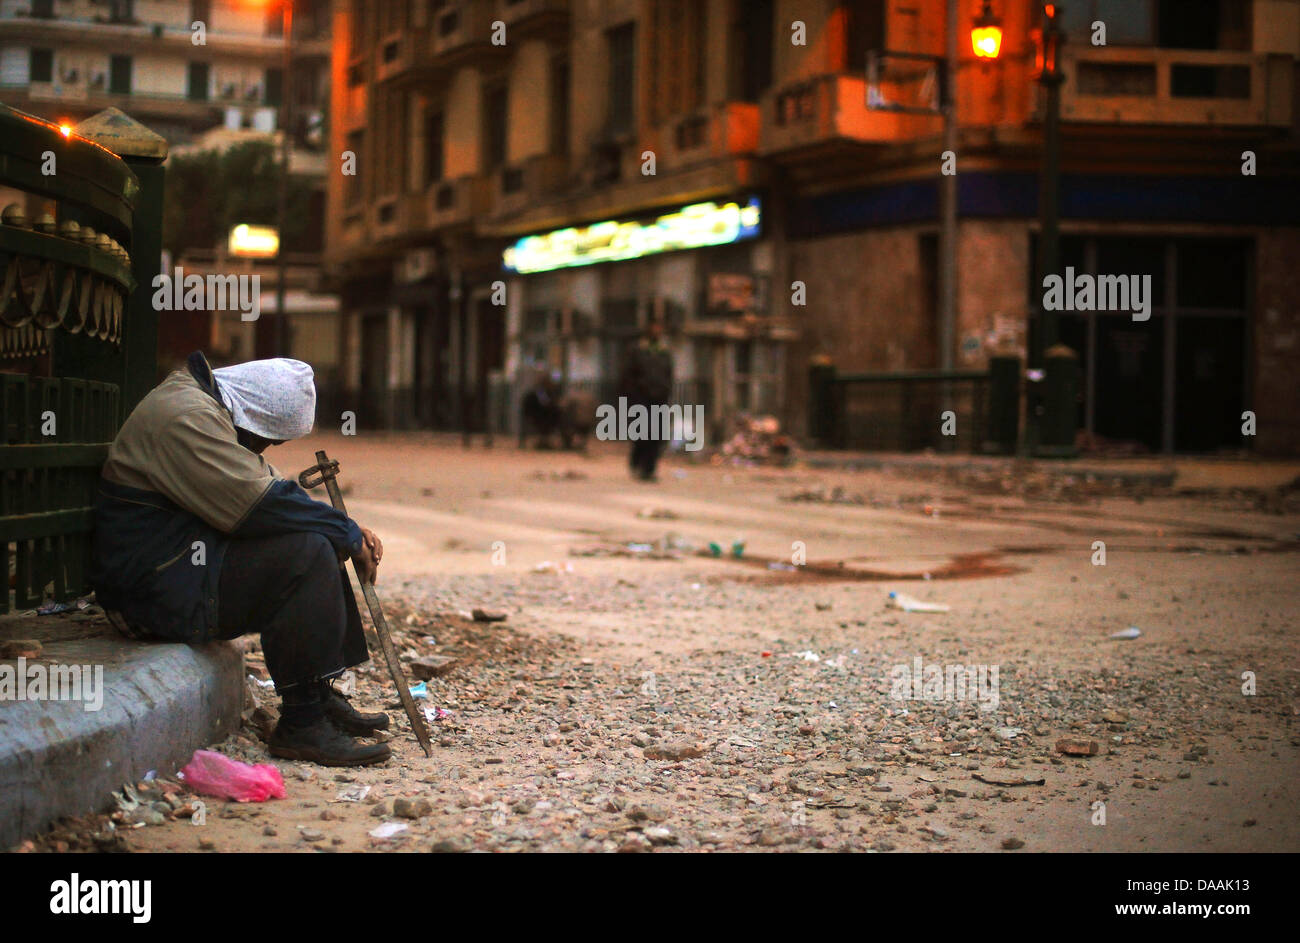 Ein Demonstrant mit einer Eisenstange schläft am Samstagmorgen (05.02.2011) auf dem Tahrir-Platz auf dem Bürgersteig. Tausende Demonstranten übernachteten auf dem Platz. Es kam zu keinen größeren Auseinandersetzungen. Foto: Hannibal dpa Stock Photo